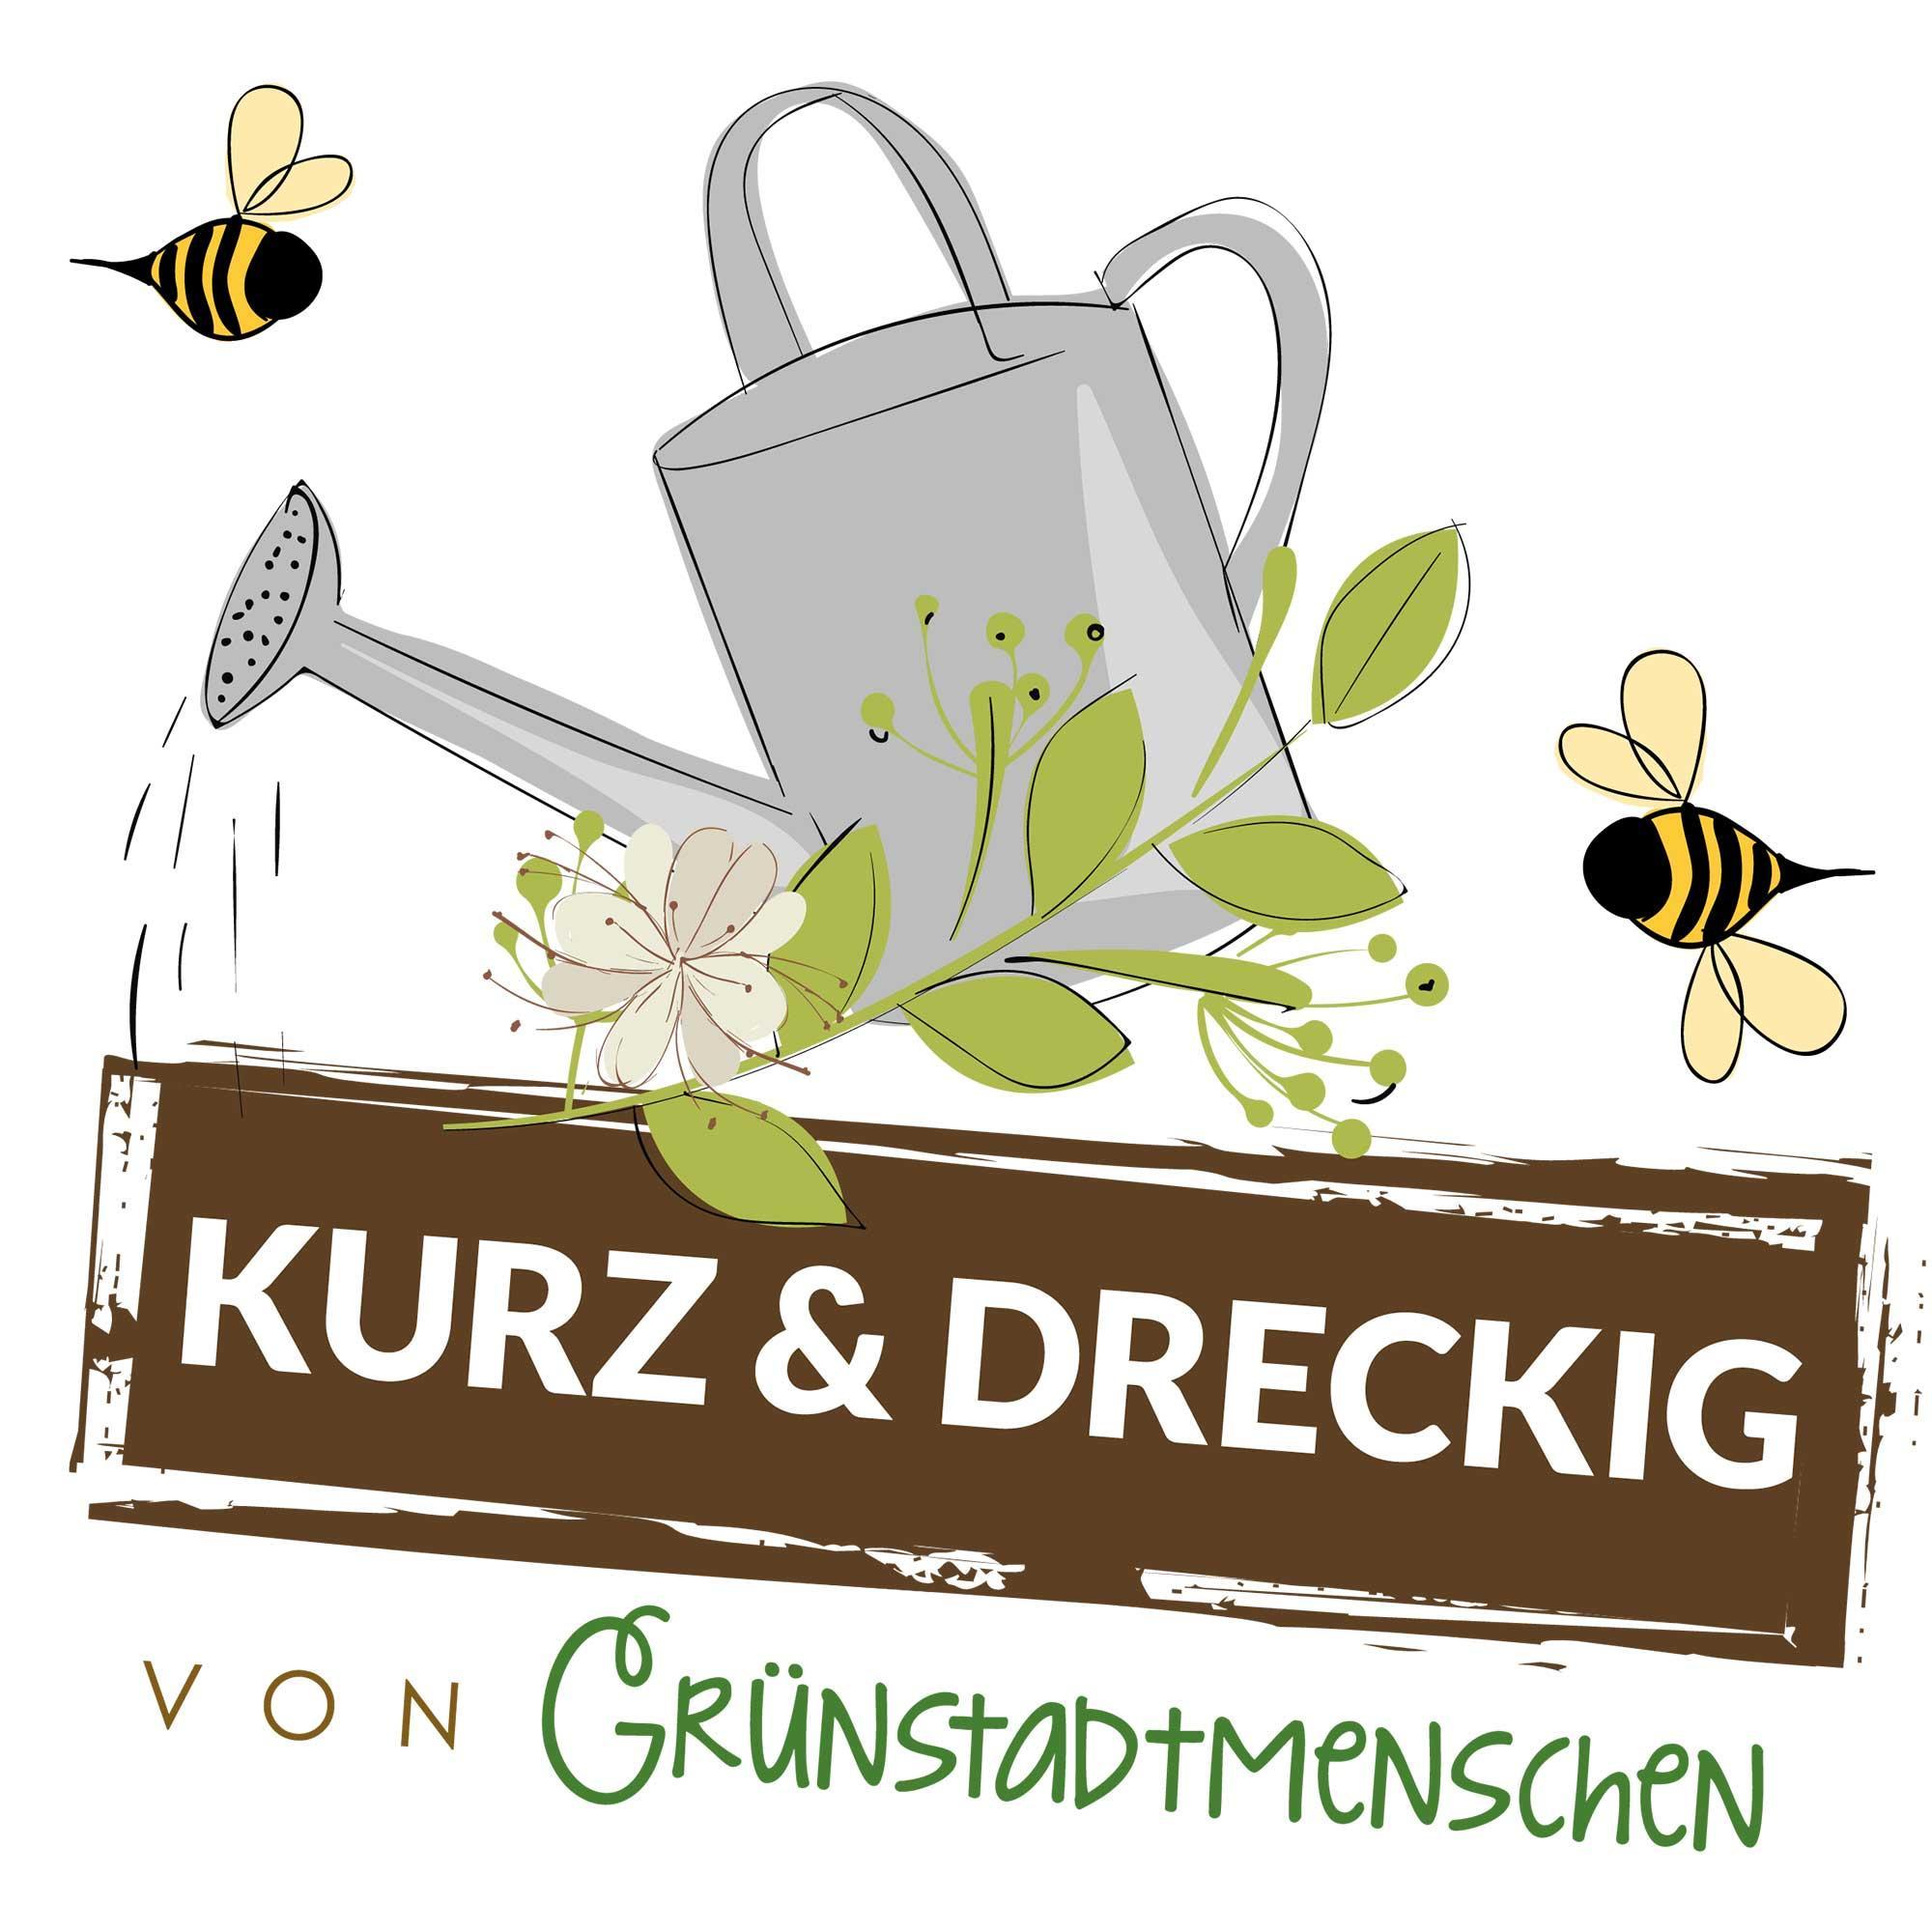 #35 Kurz & dreckig: Karinas Gartentipps für den Juni